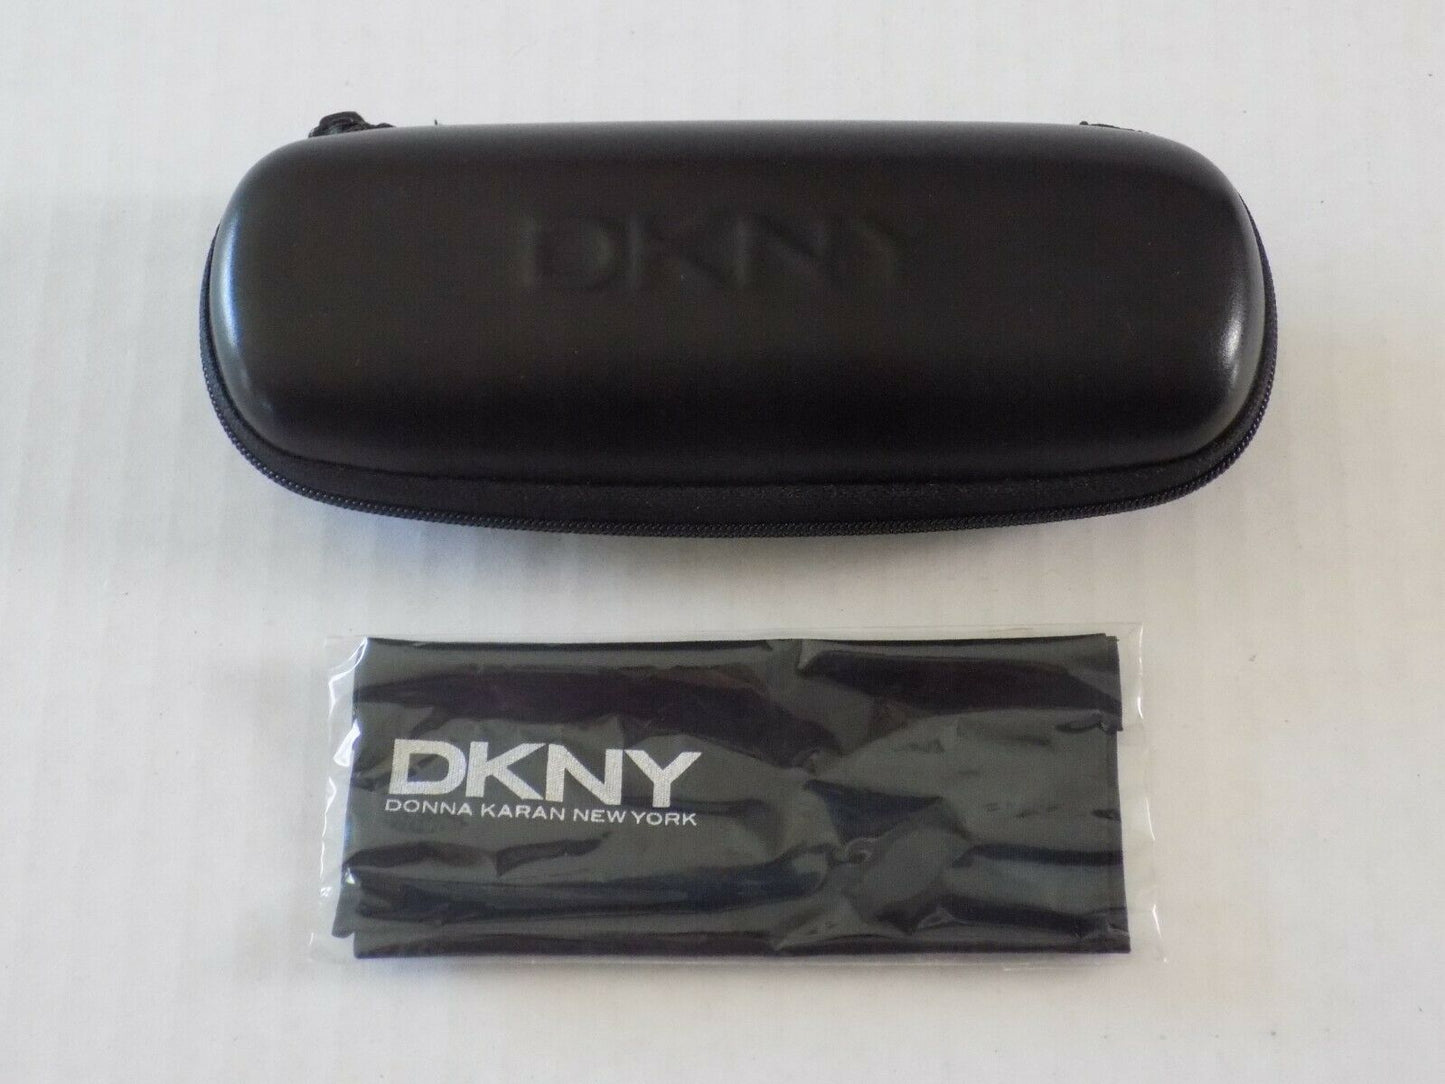 Dkny DK507S-265 49mm